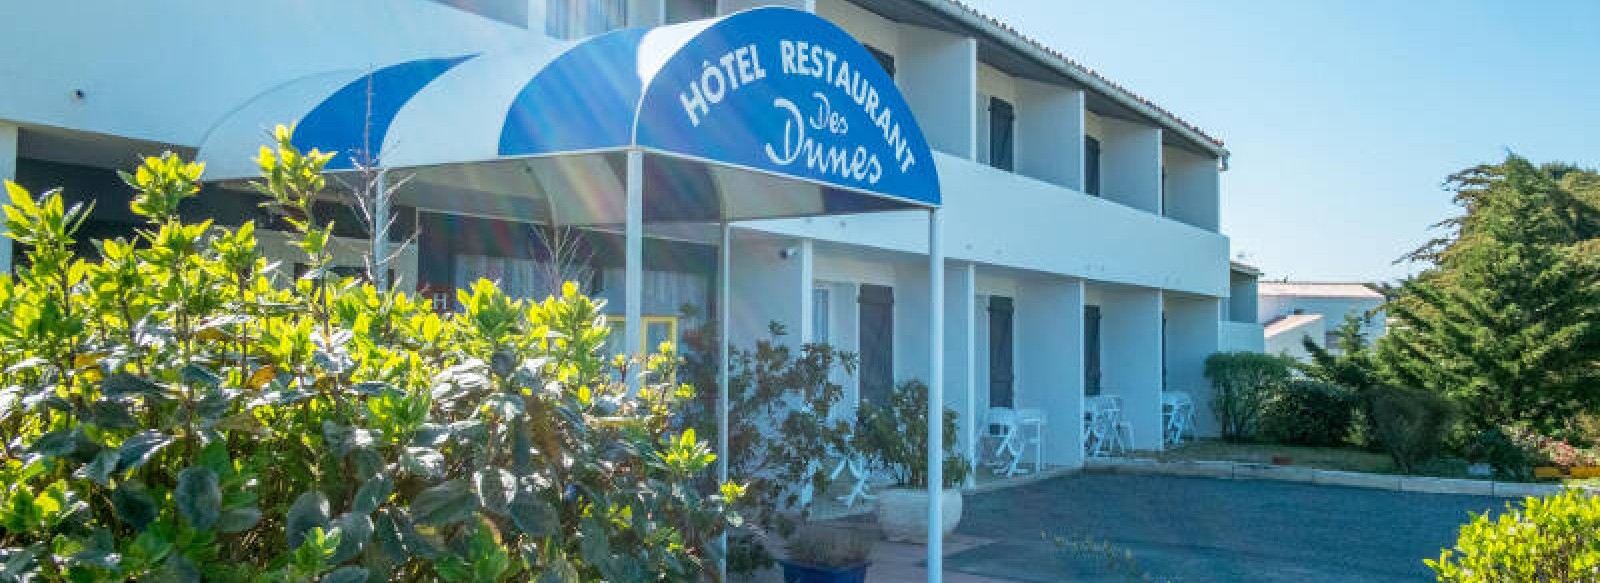 HOTEL - RESTAURANT DES DUNES